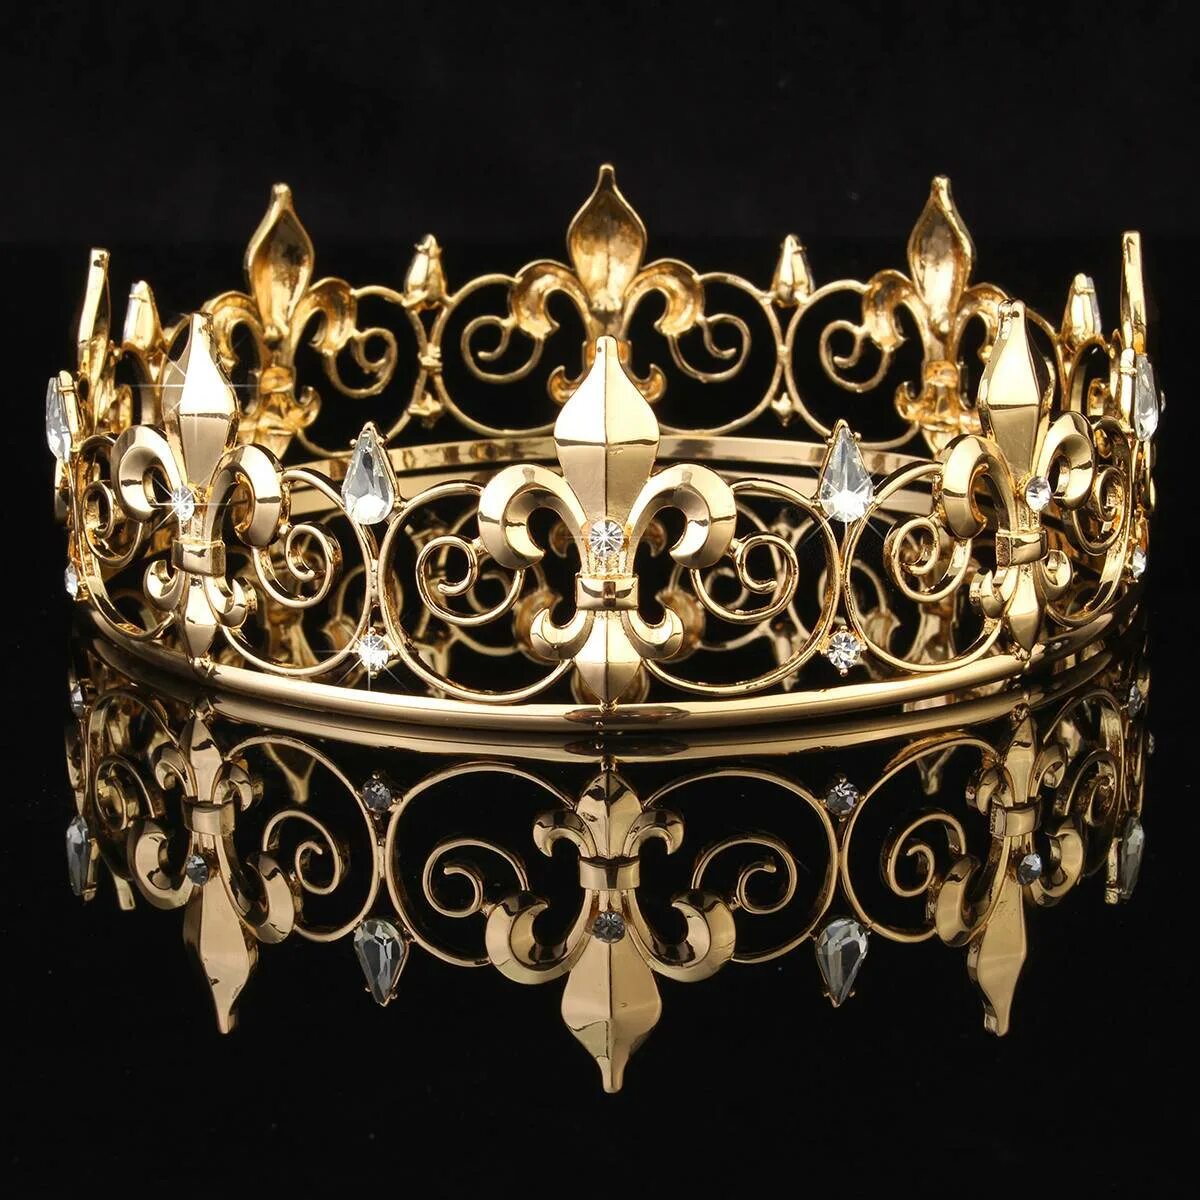 Золотая корона купить. Корона короля тиара. Диадема корона Королевская Золотая. Диадема Флер-де-Лис. Королевская корона (серебряная с драгоценными камнями).